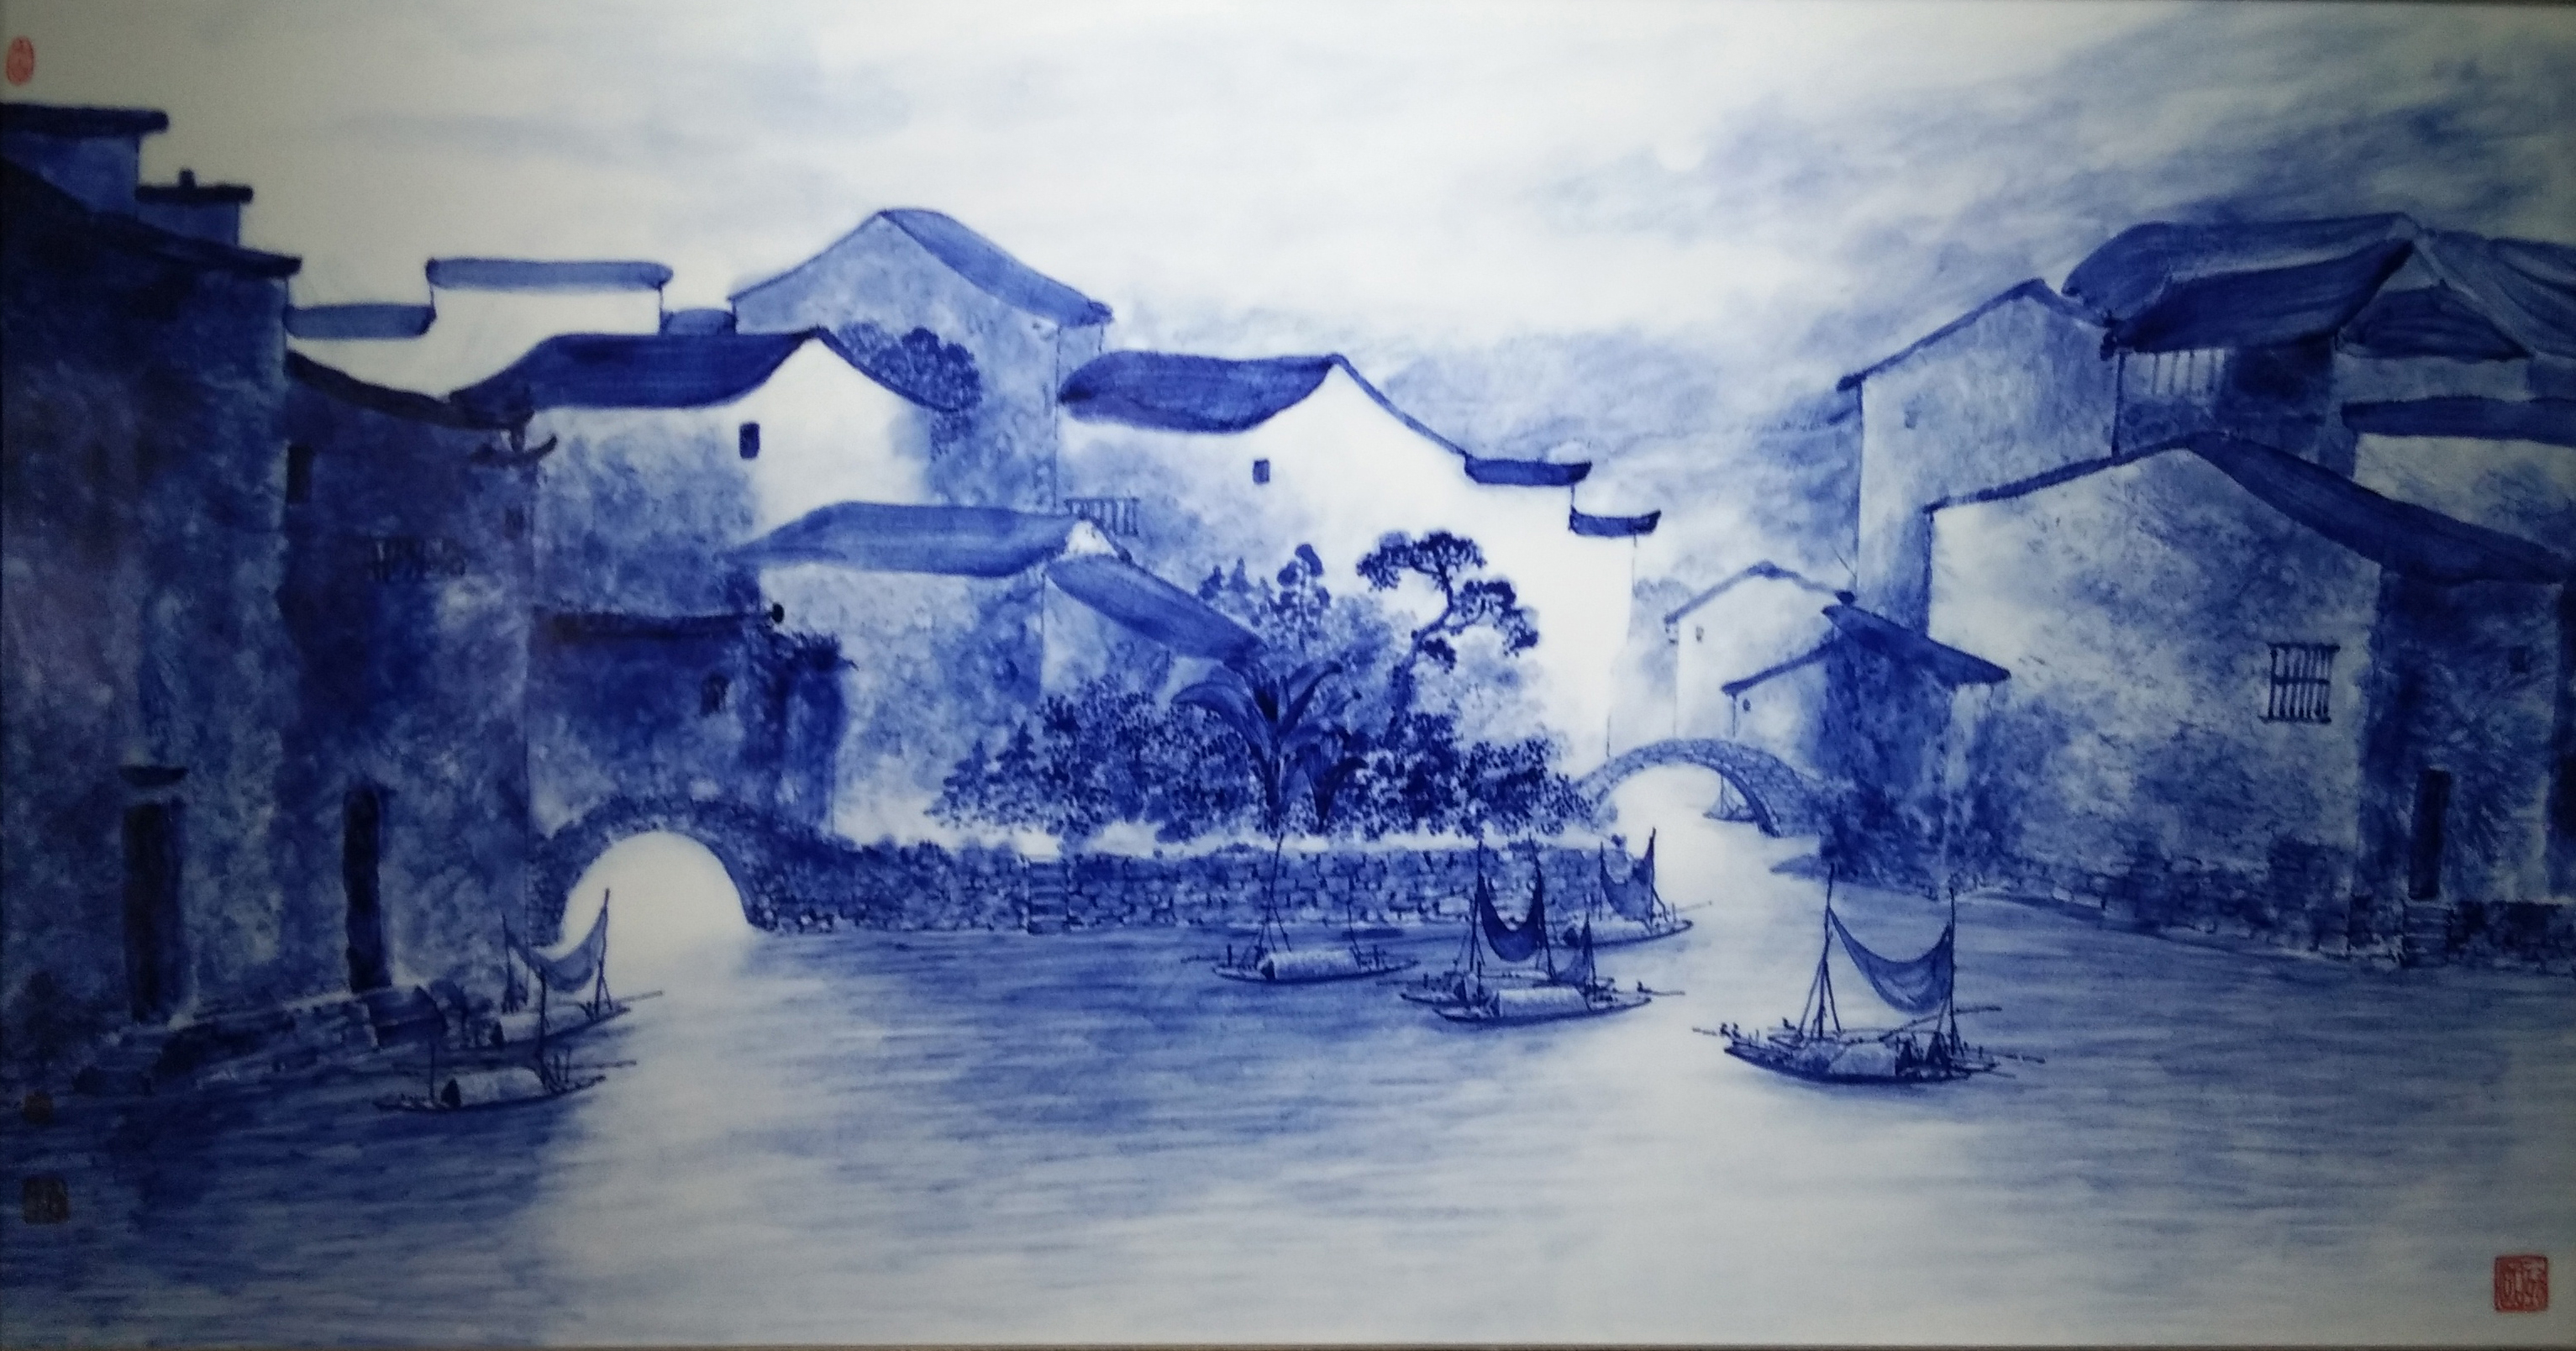 【作品欣赏】青花山水画具有独特的魅力,一种宁静悠远,古朴俊雅的美